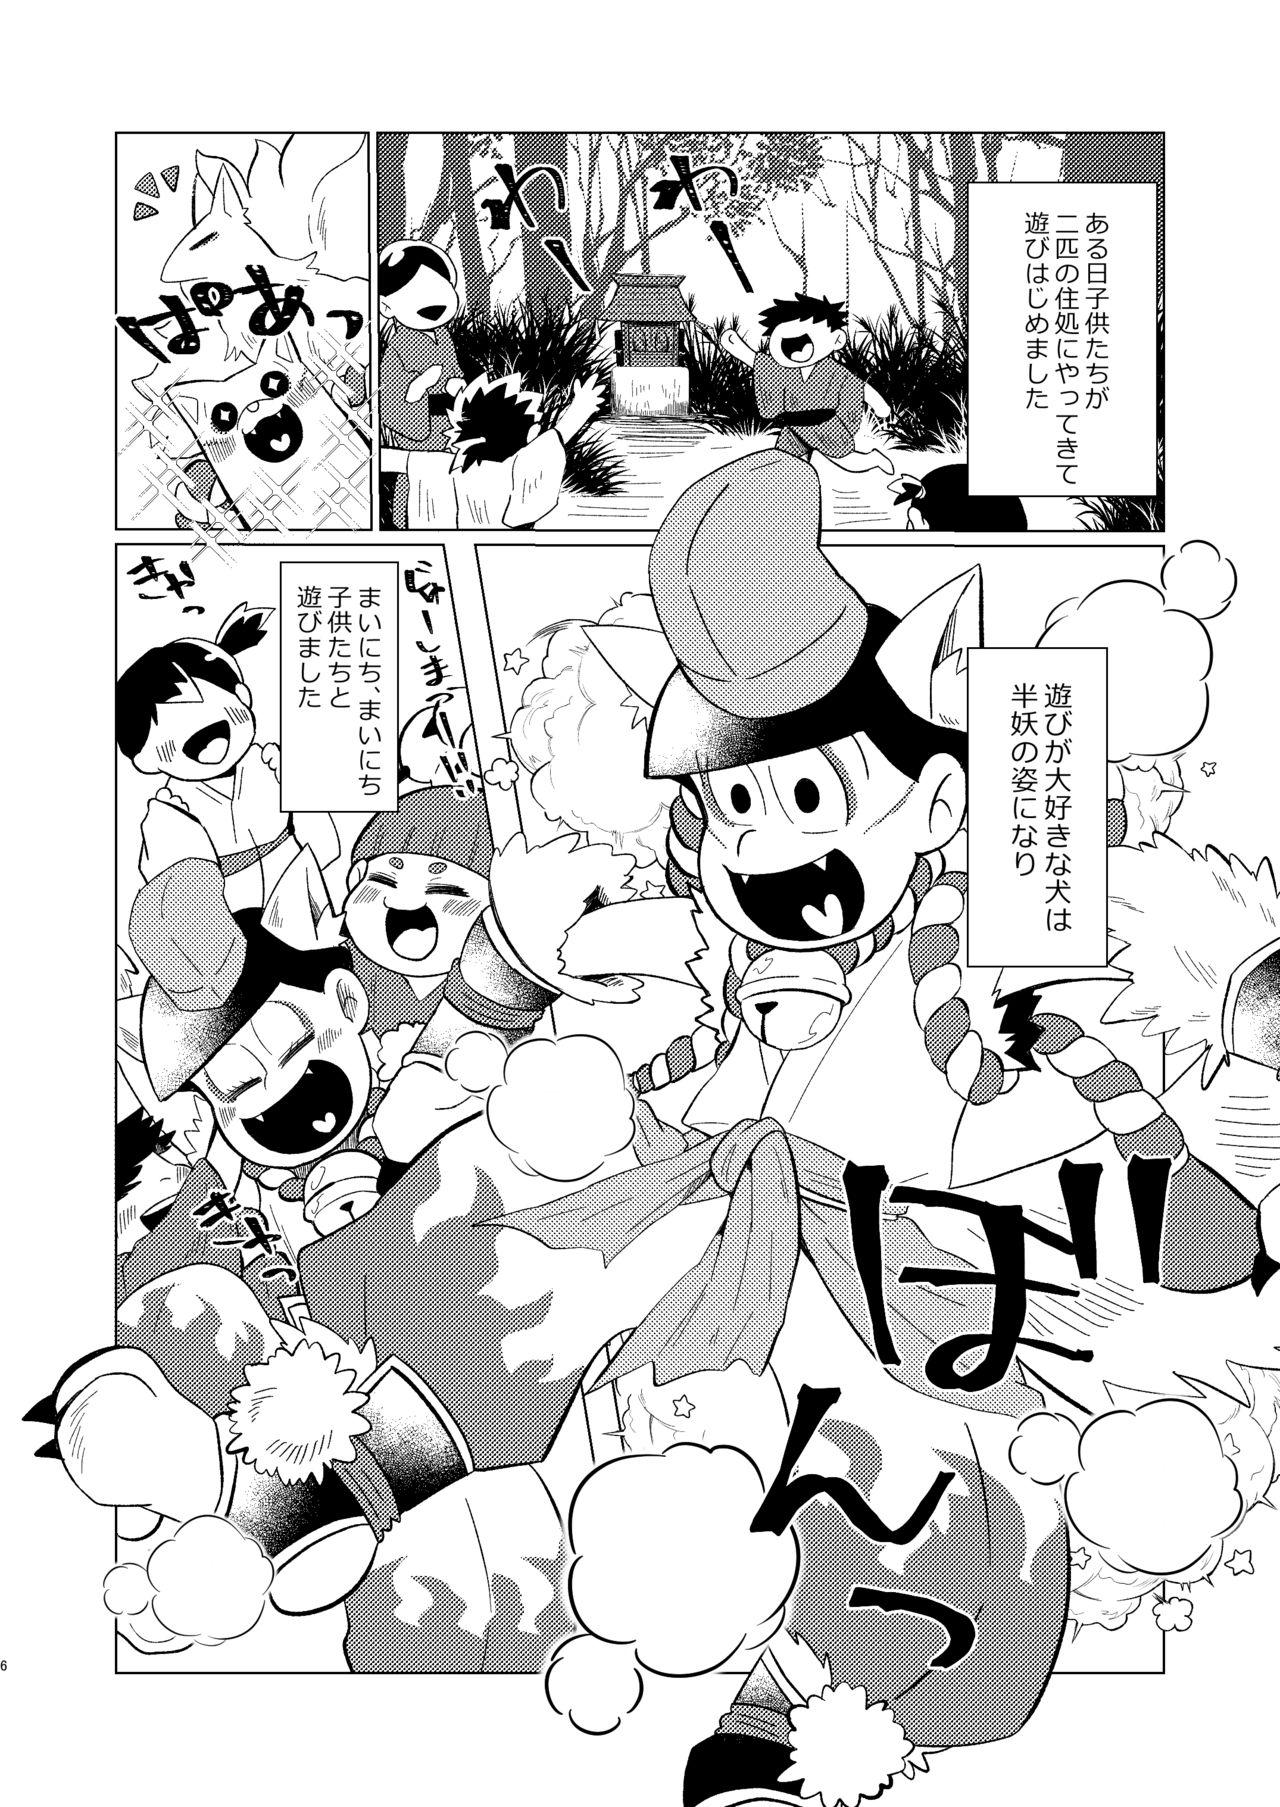 Kashima Megure, Megure Rinne no Hate e - Osomatsu-san Anal Play - Page 4